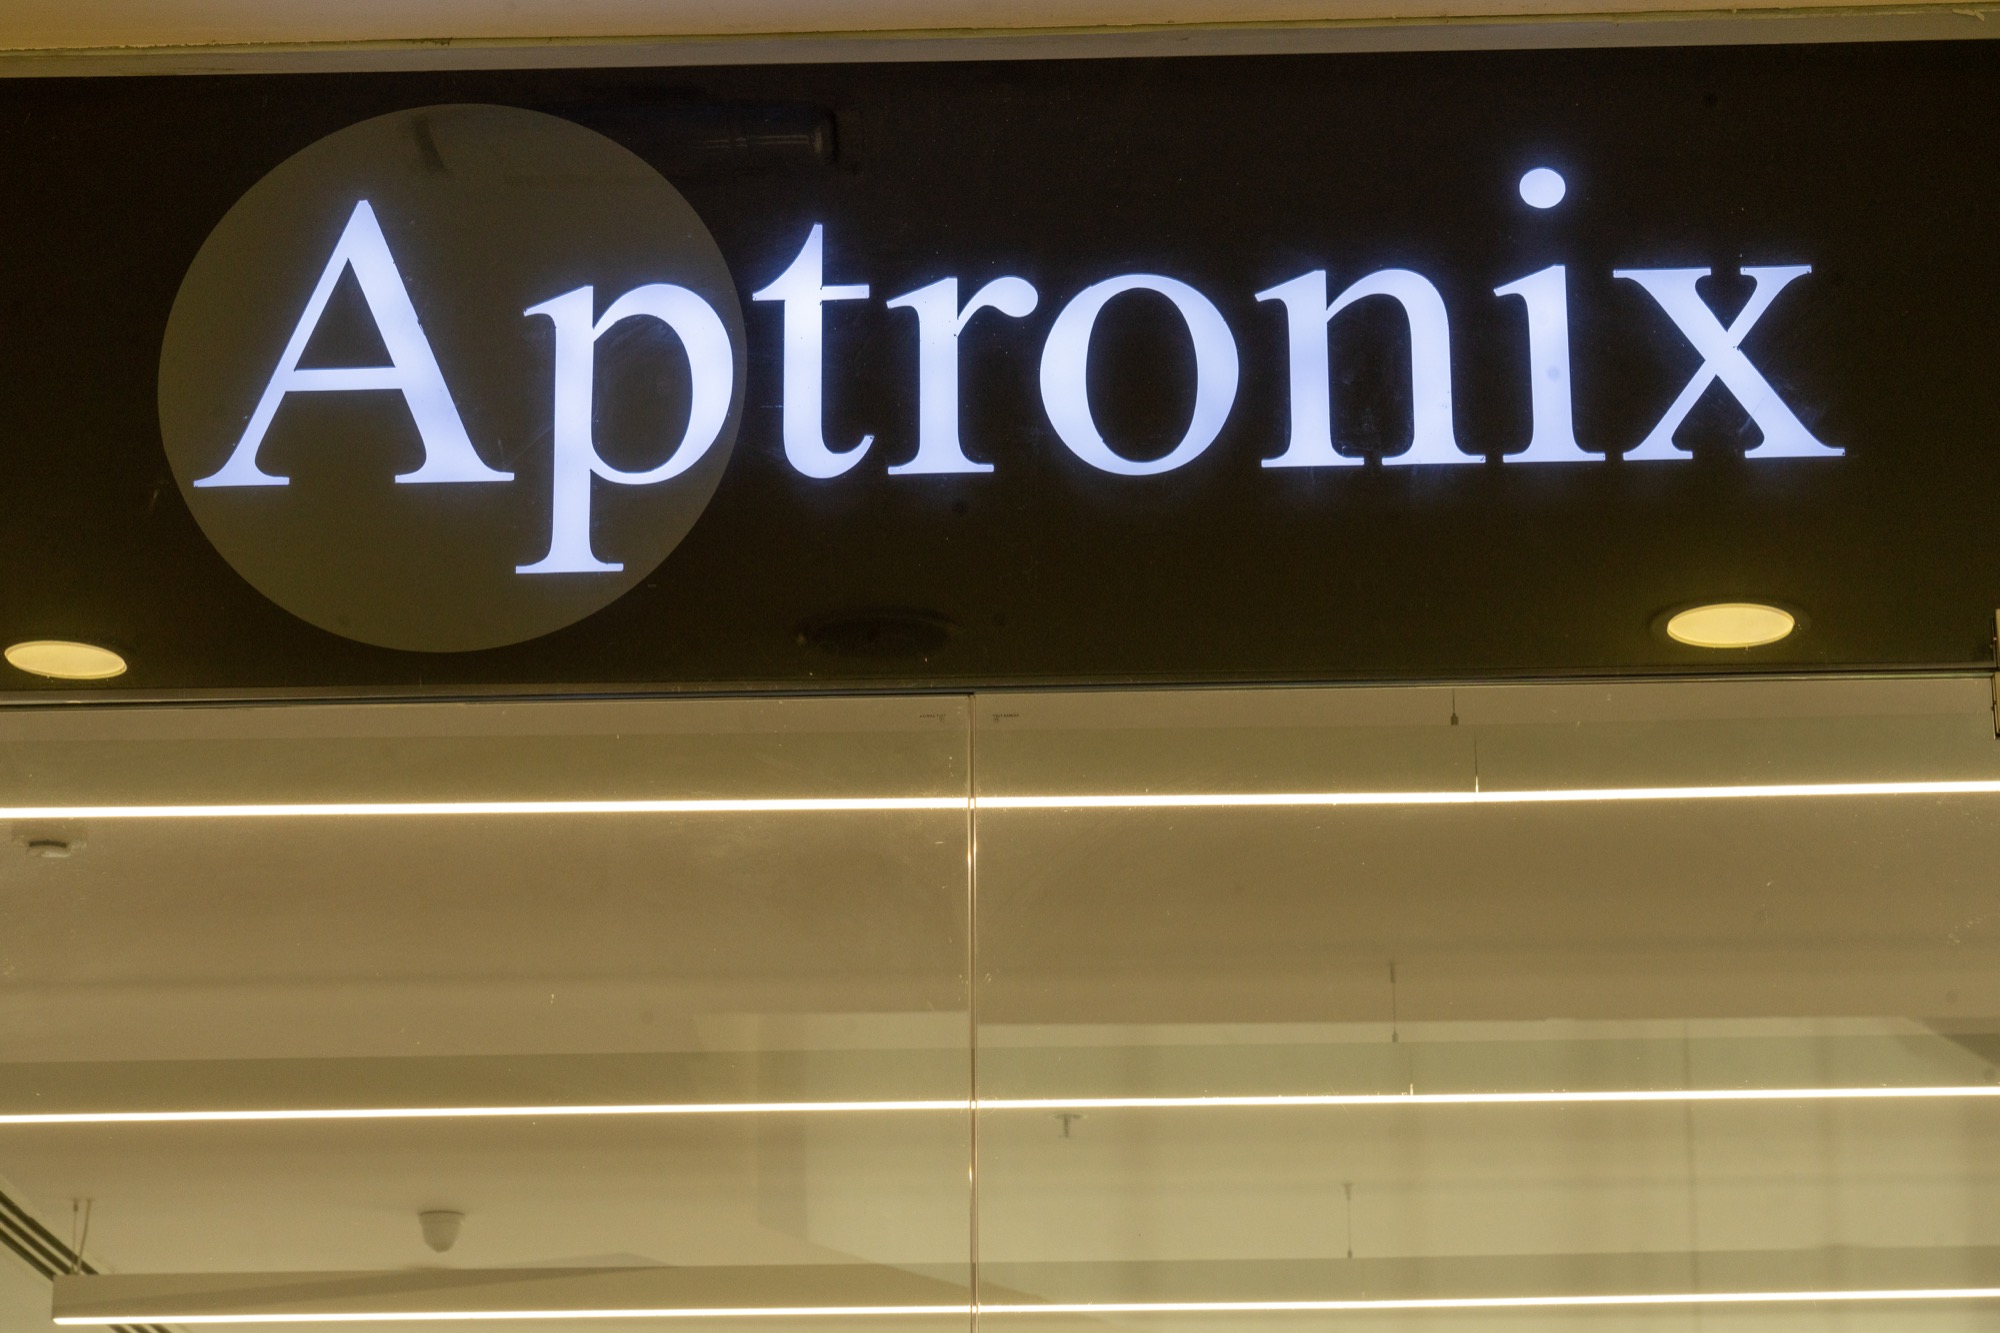 Aptronix, Galleria